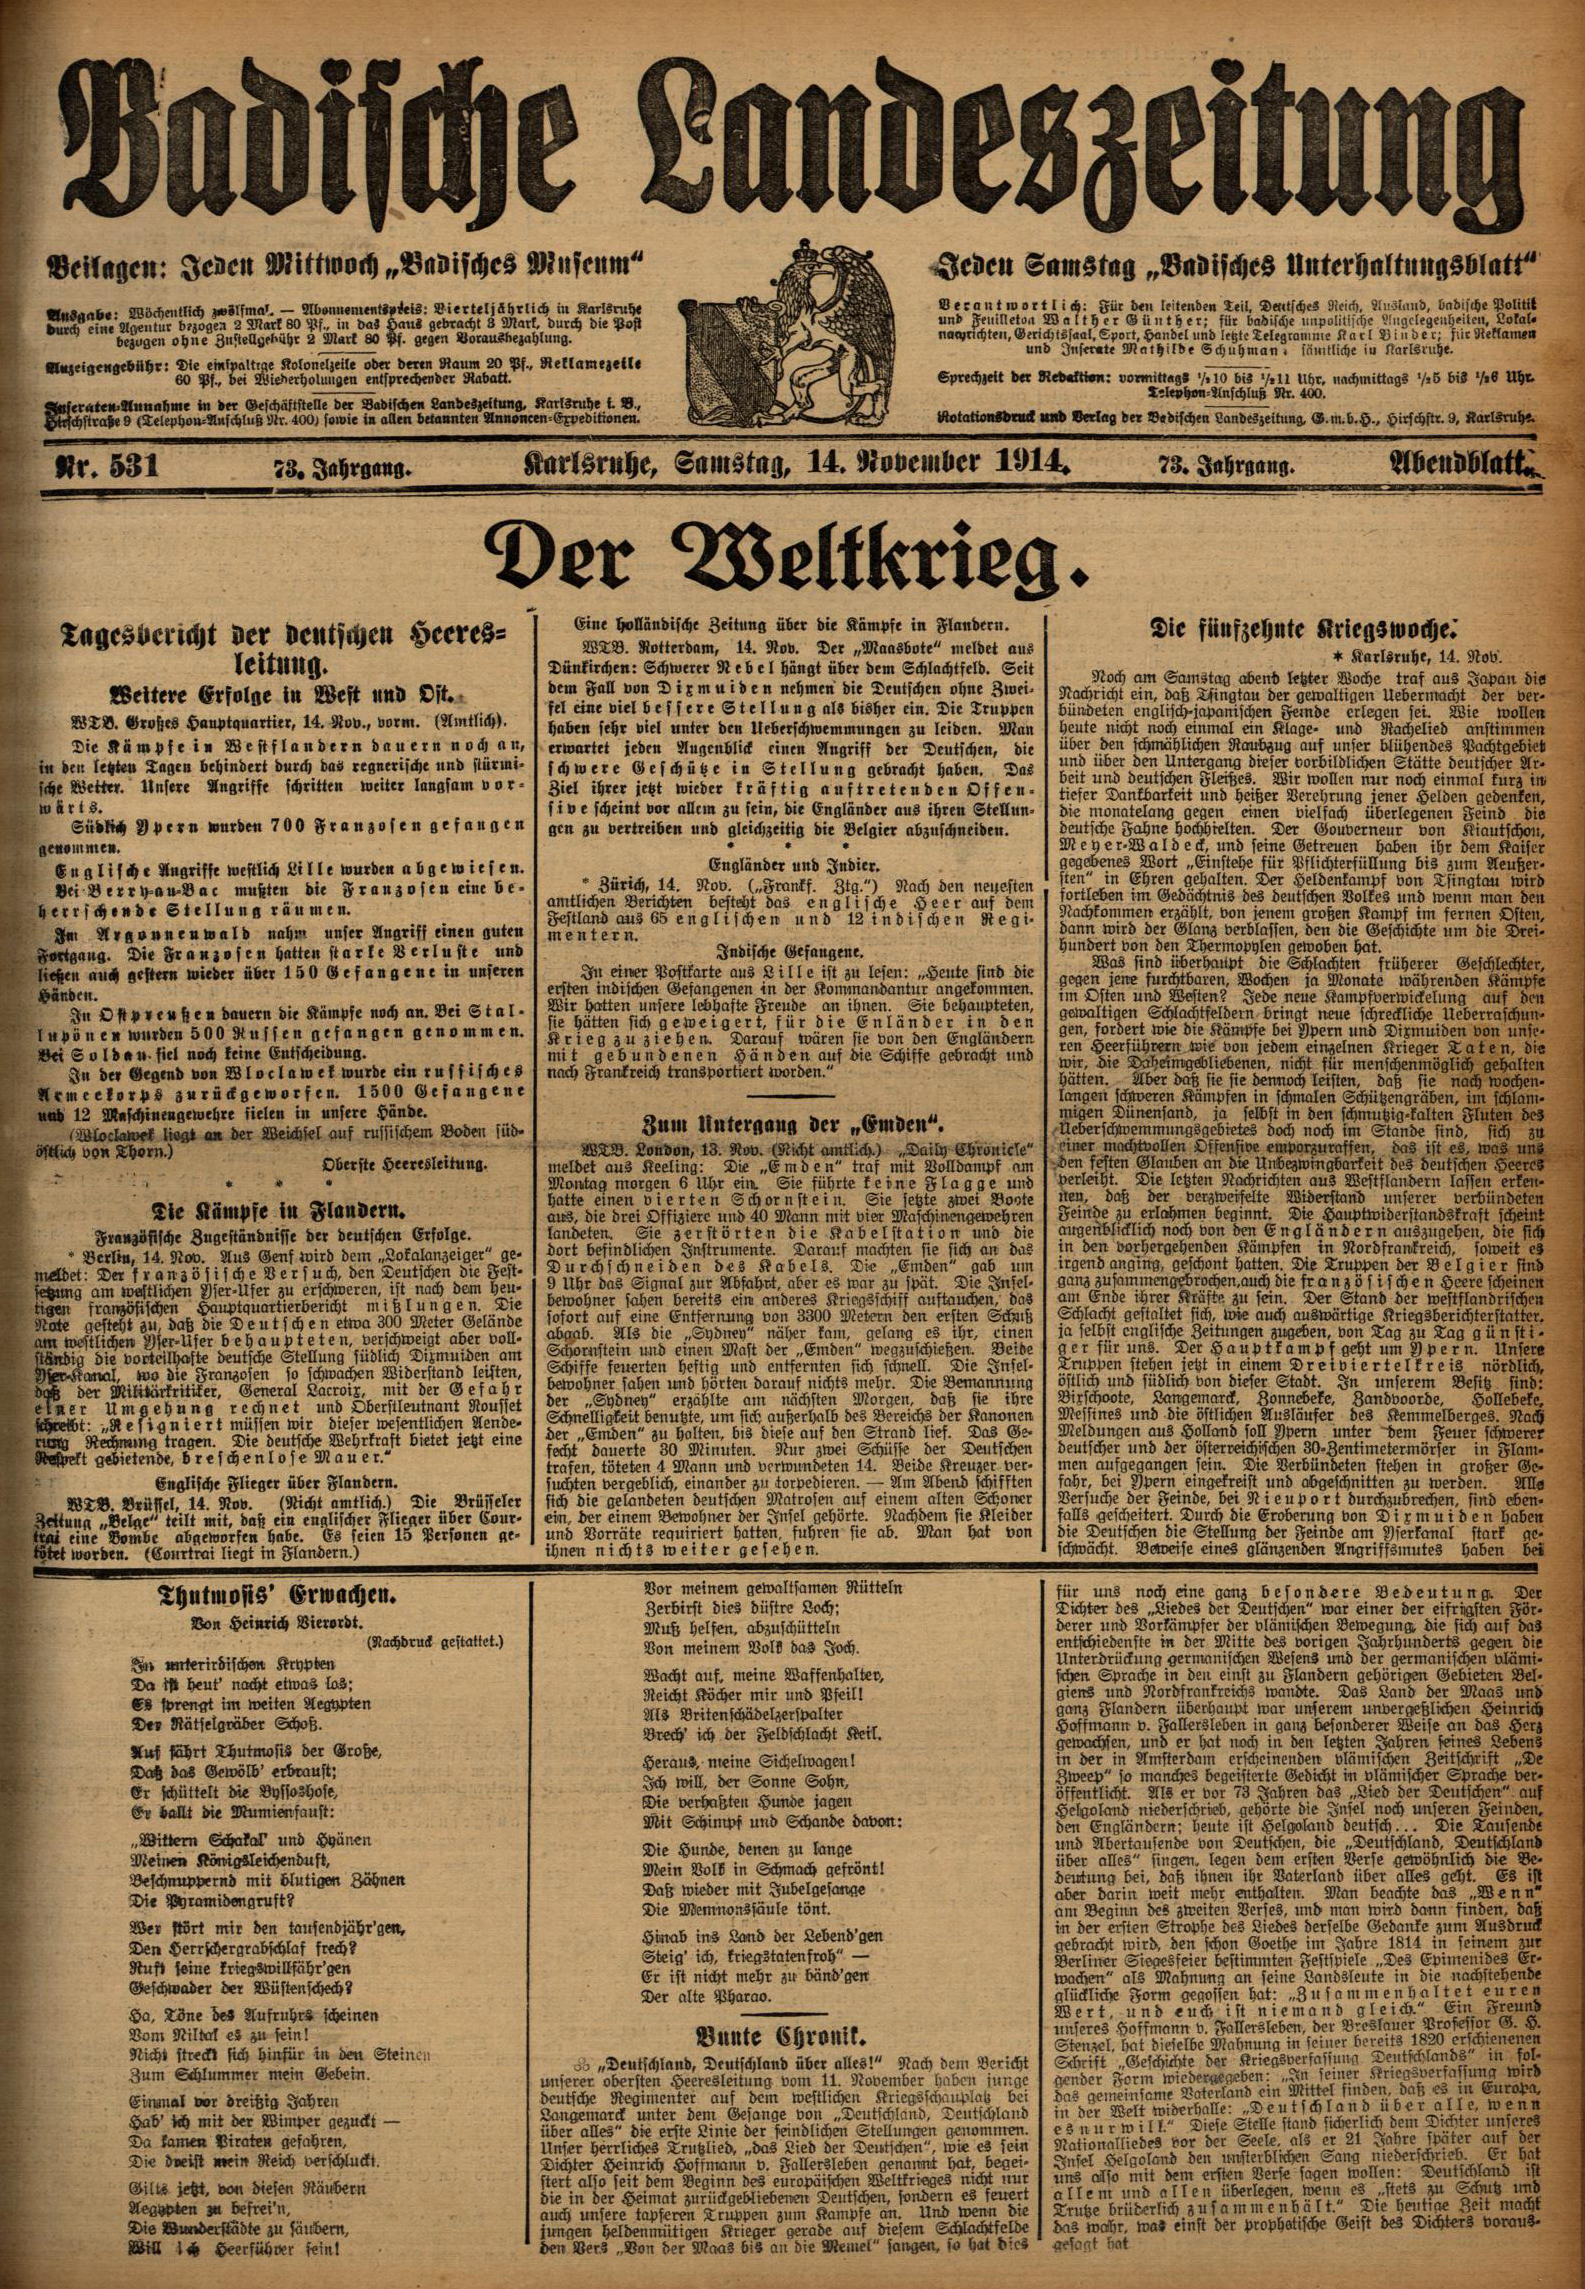 Zu sehen ist: Badische Landeszeitung, Karlsruhe, Samstag, 14. November 1914, Nr. 531, Jg. 73 Abendblatt.